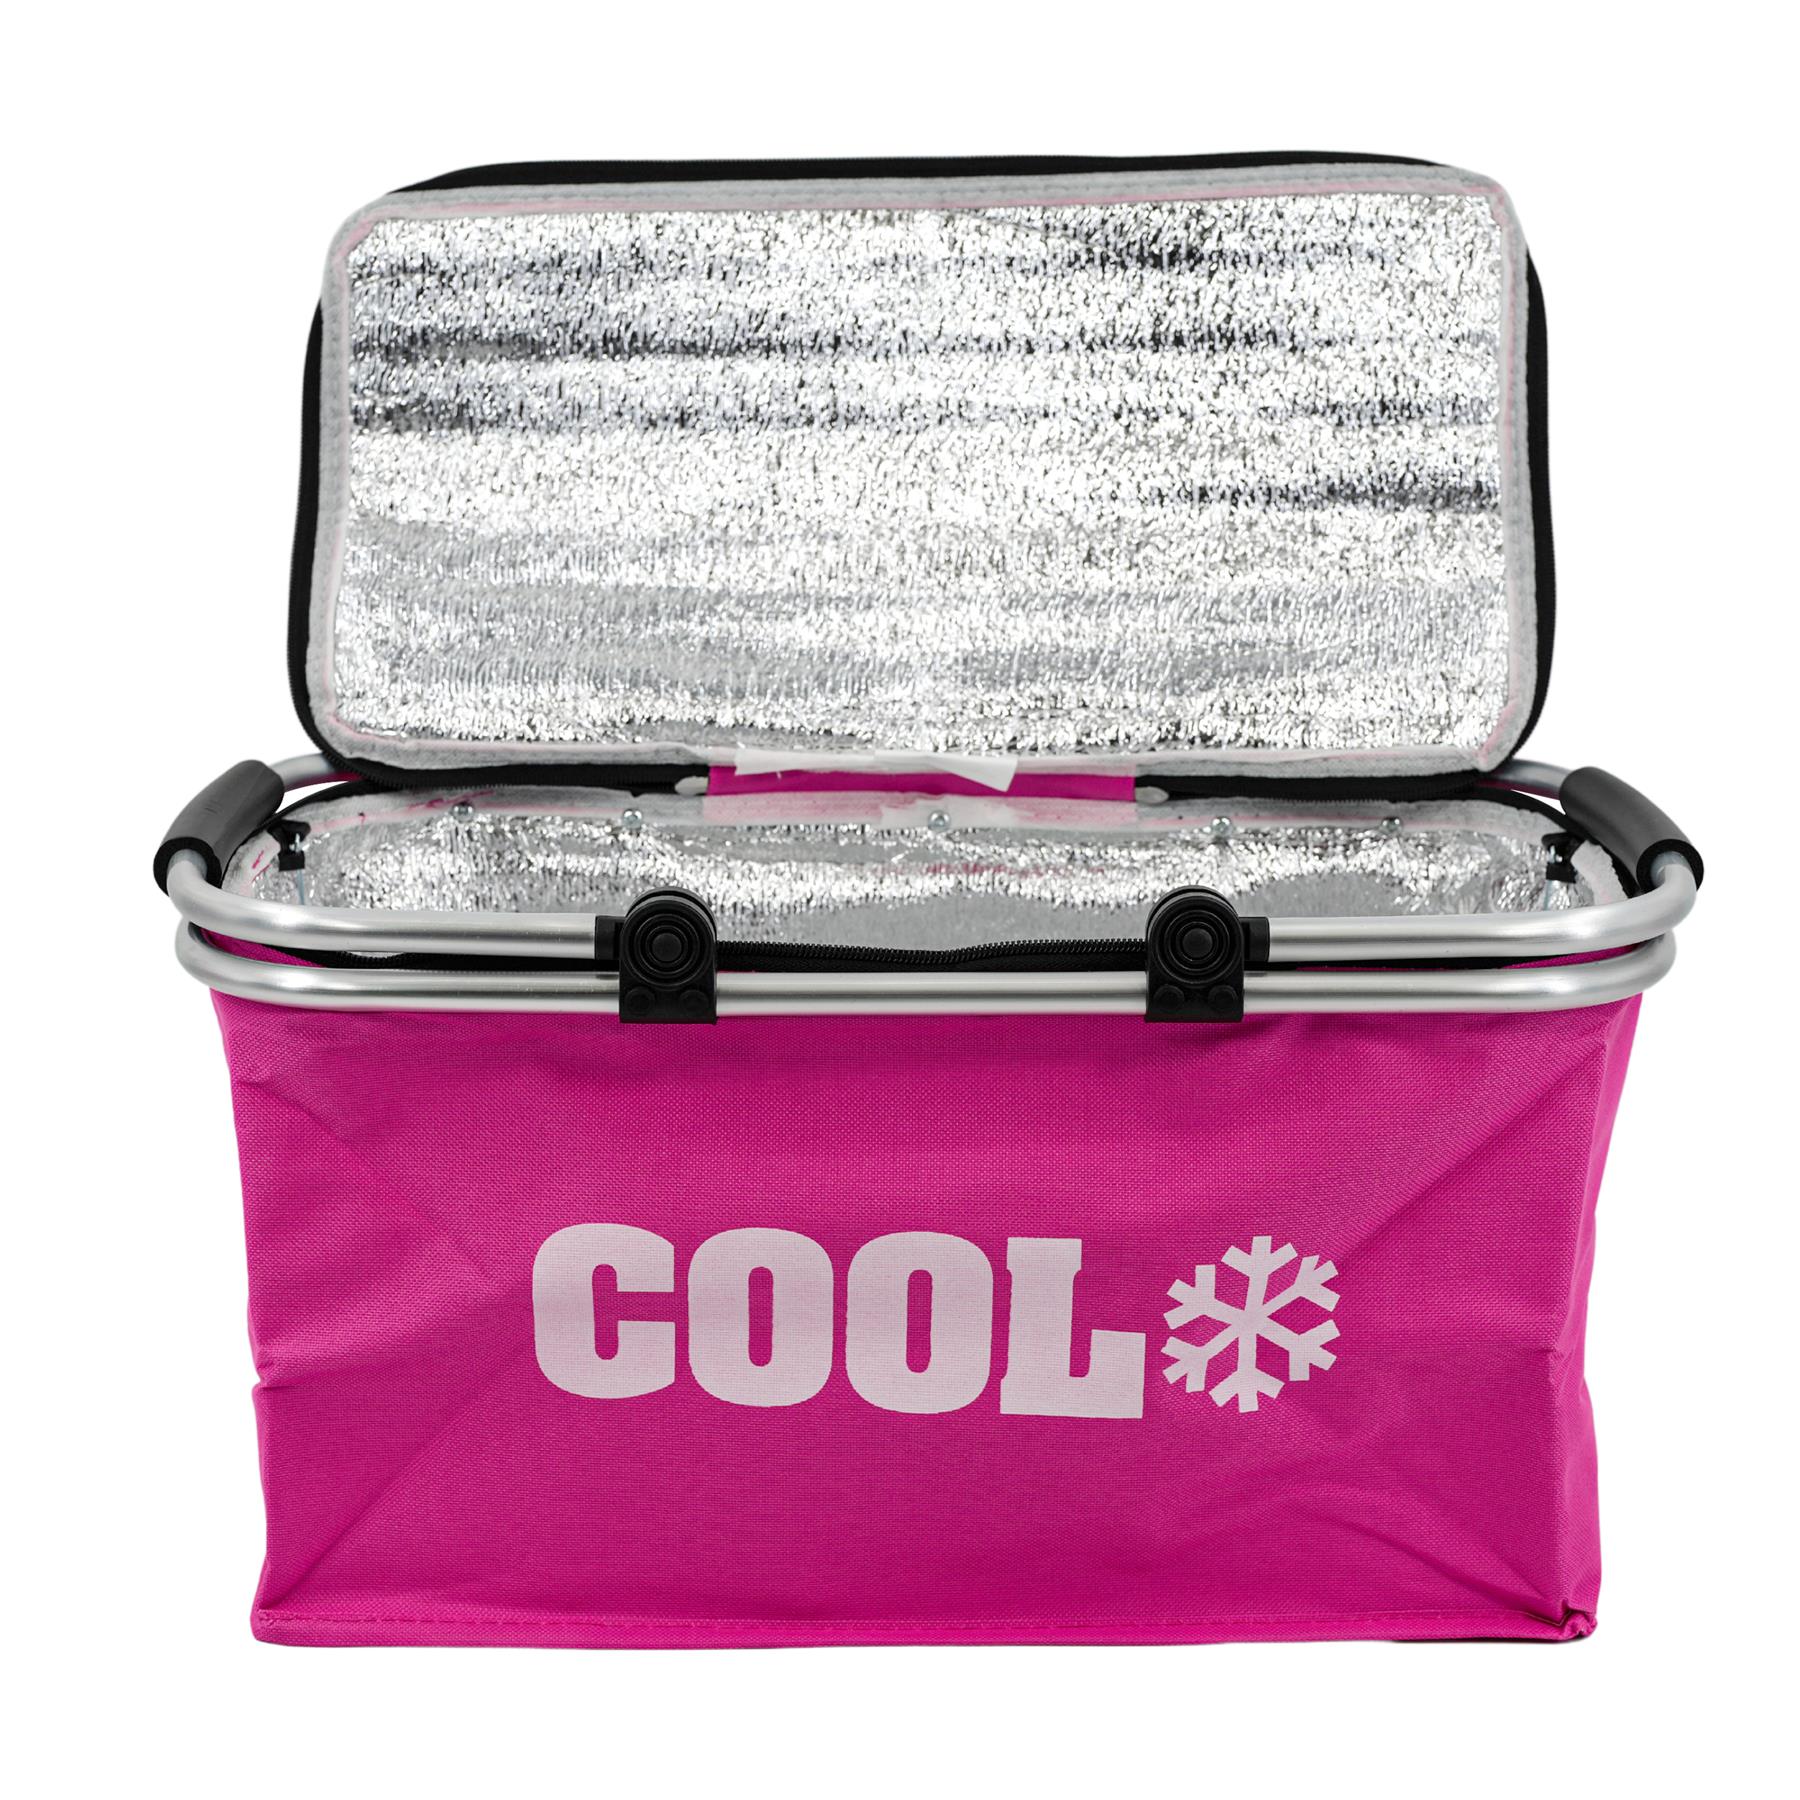 The Magic Toy Shop mealholder Pink Cooler Basket Bag